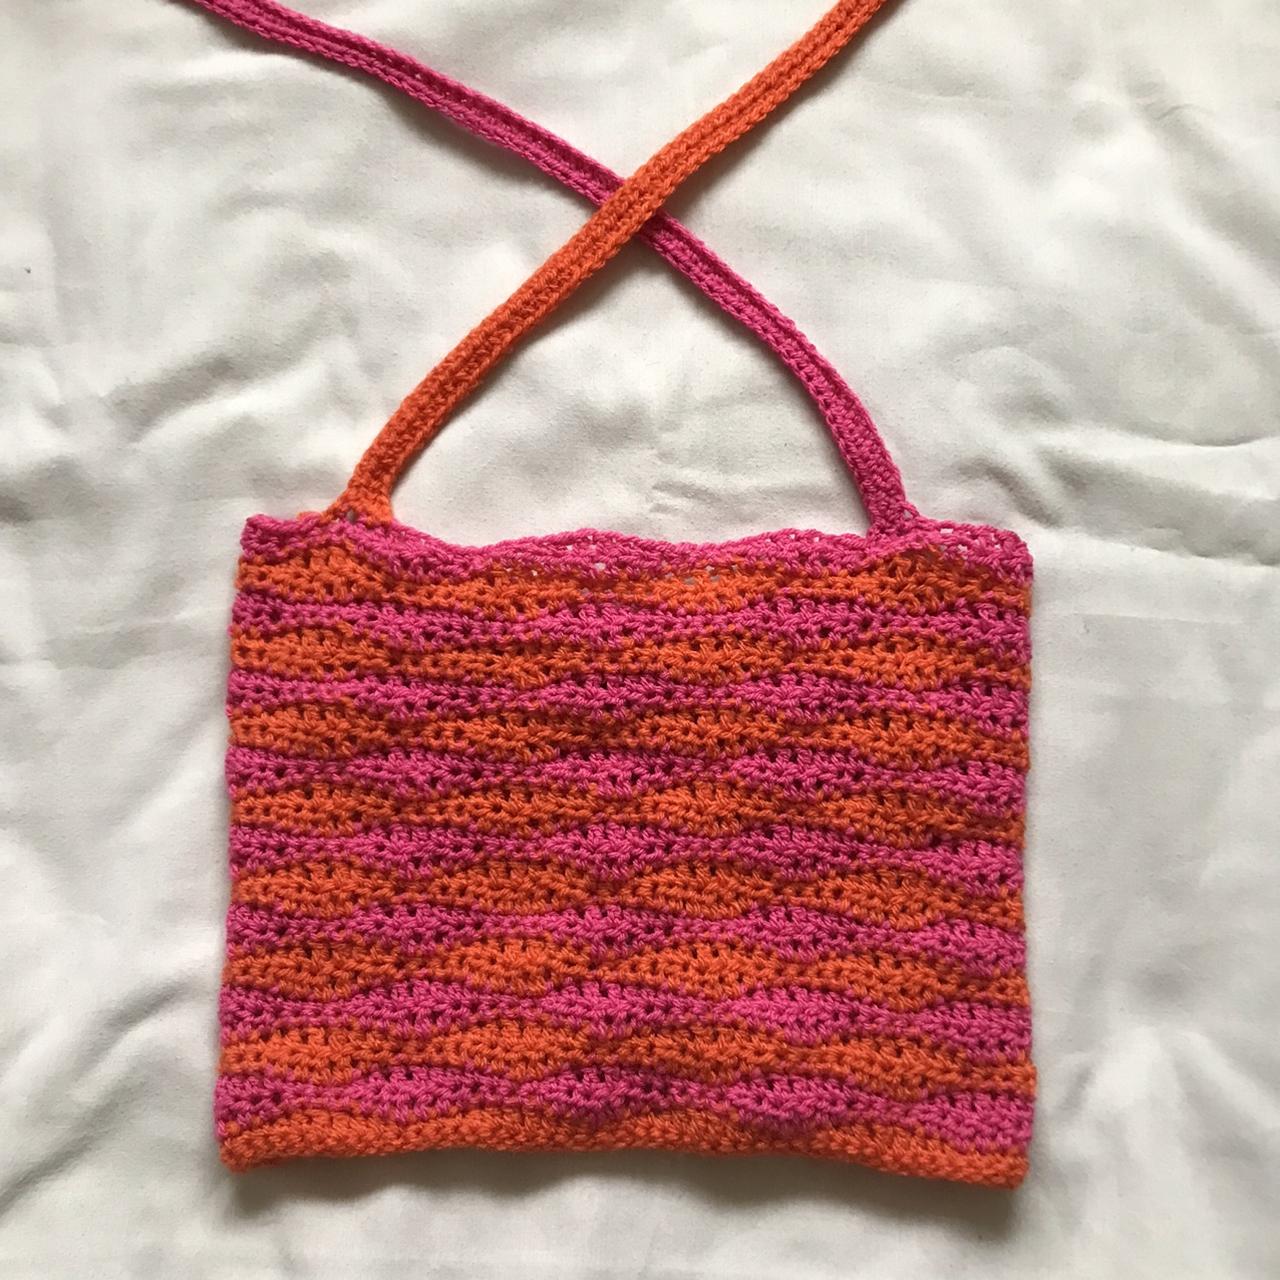 Crochet Gimaguas Inspired Alys Été Top Handmade... - Depop